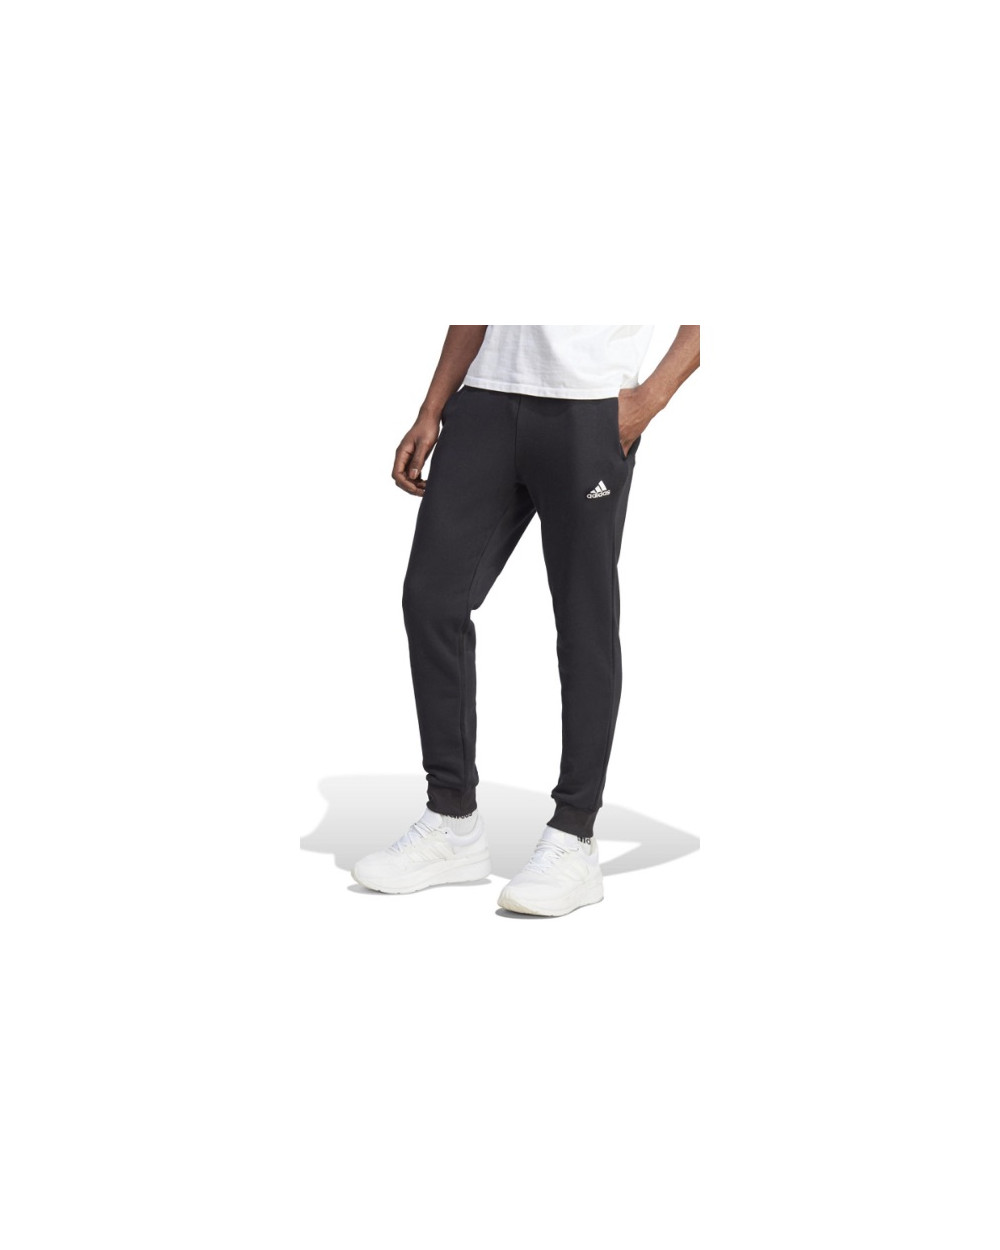 Pantalone adidas nero unisex ib4023